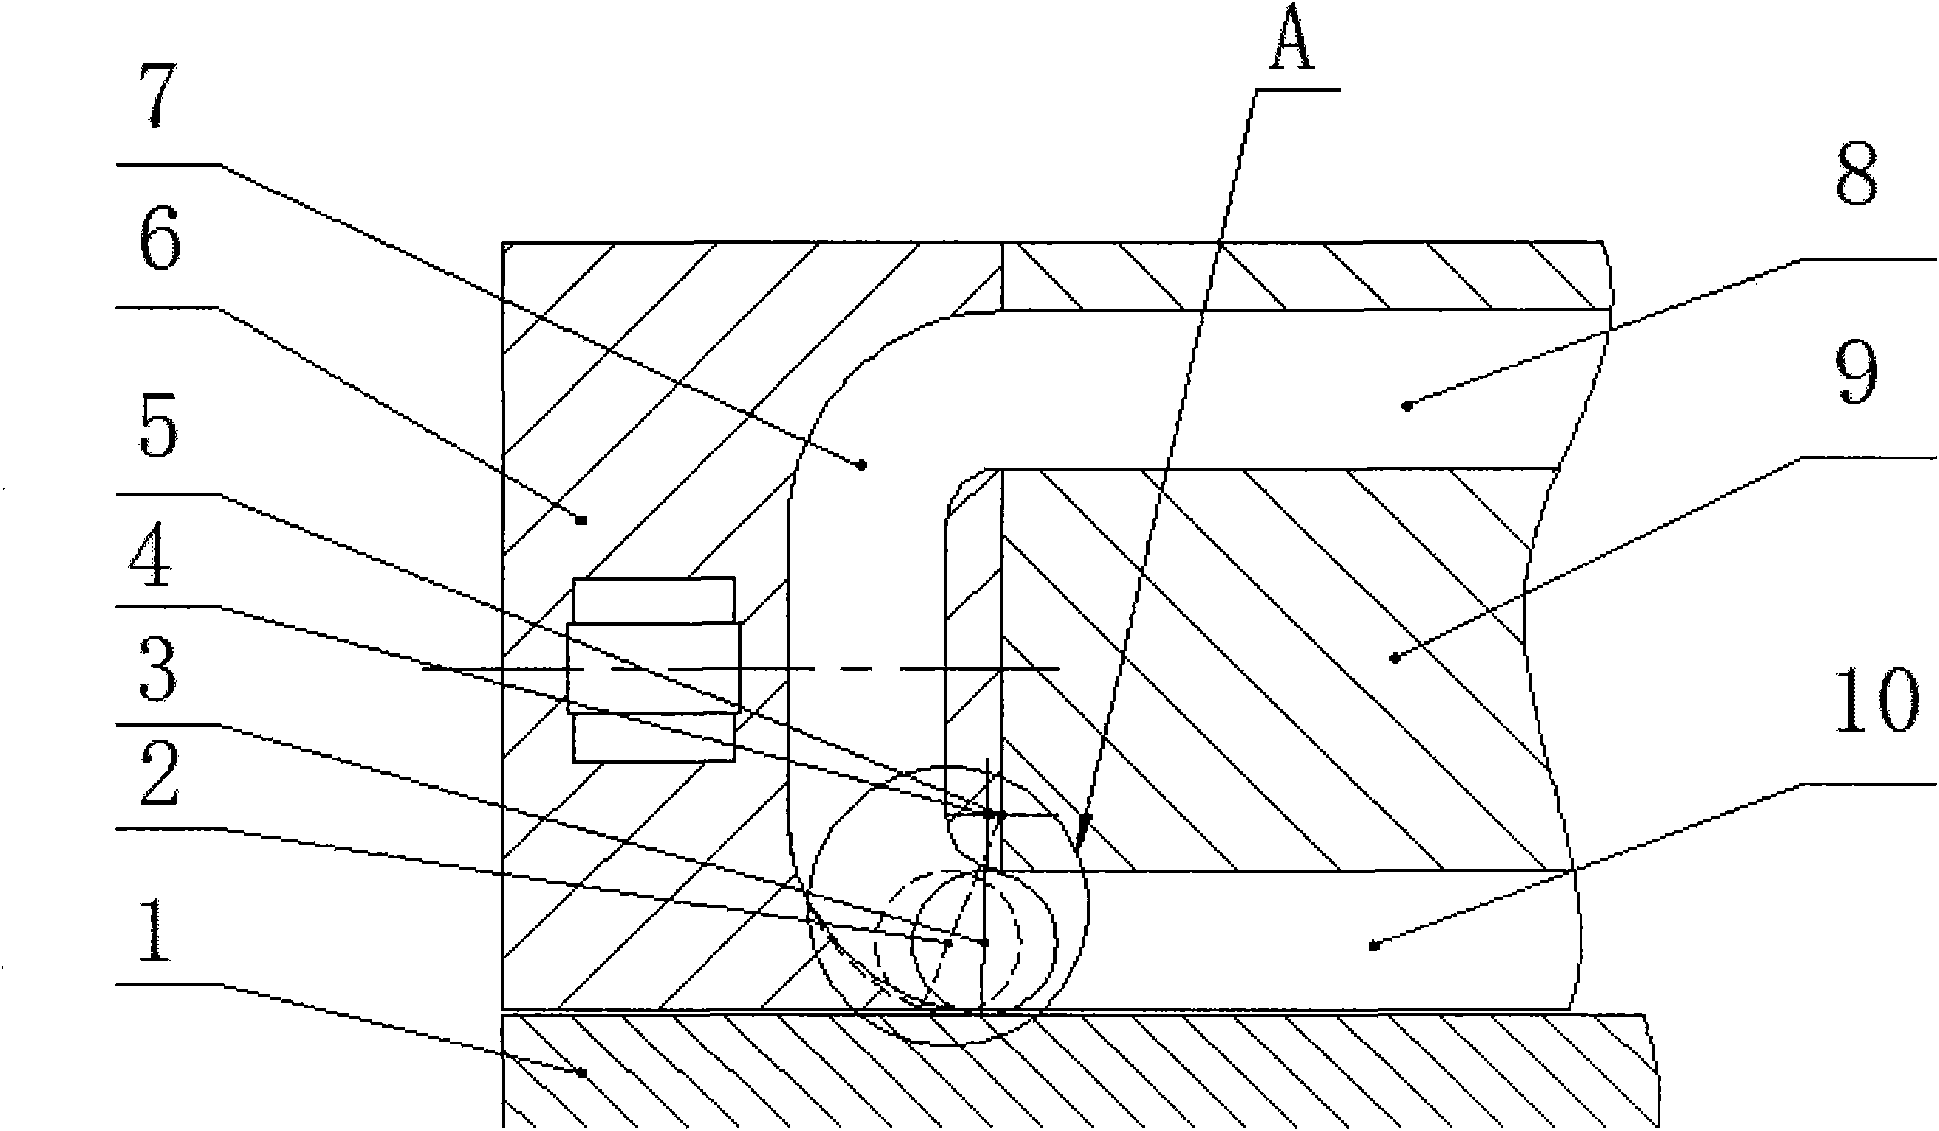 Linear roller guide rail pair inverter